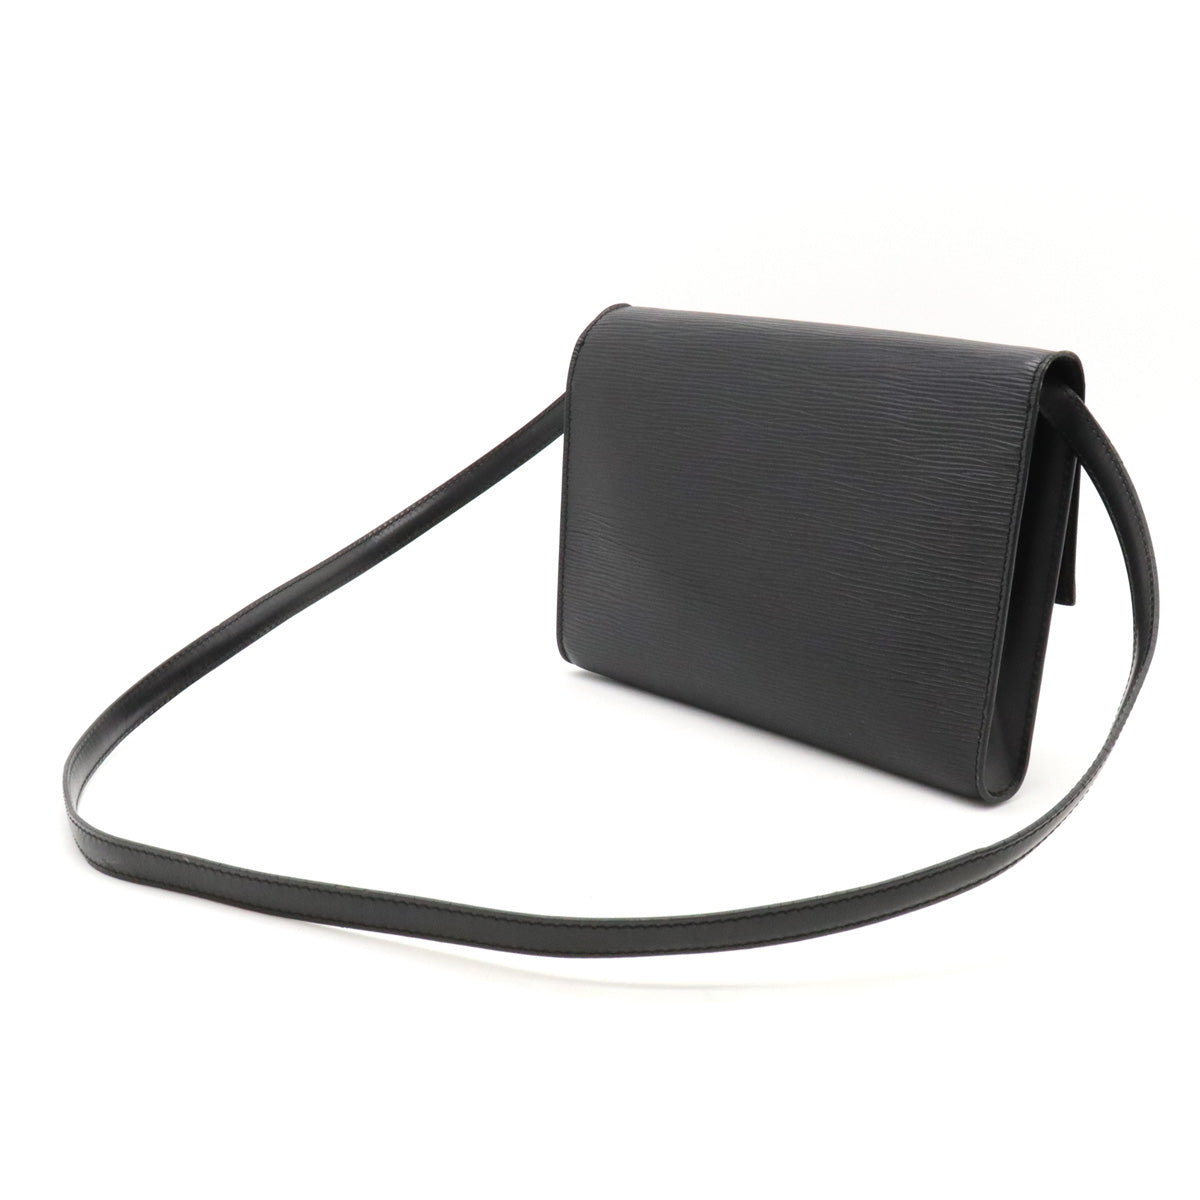 Louis Vuitton Vintage Black Epi Leather Pochette Arche Shoulder